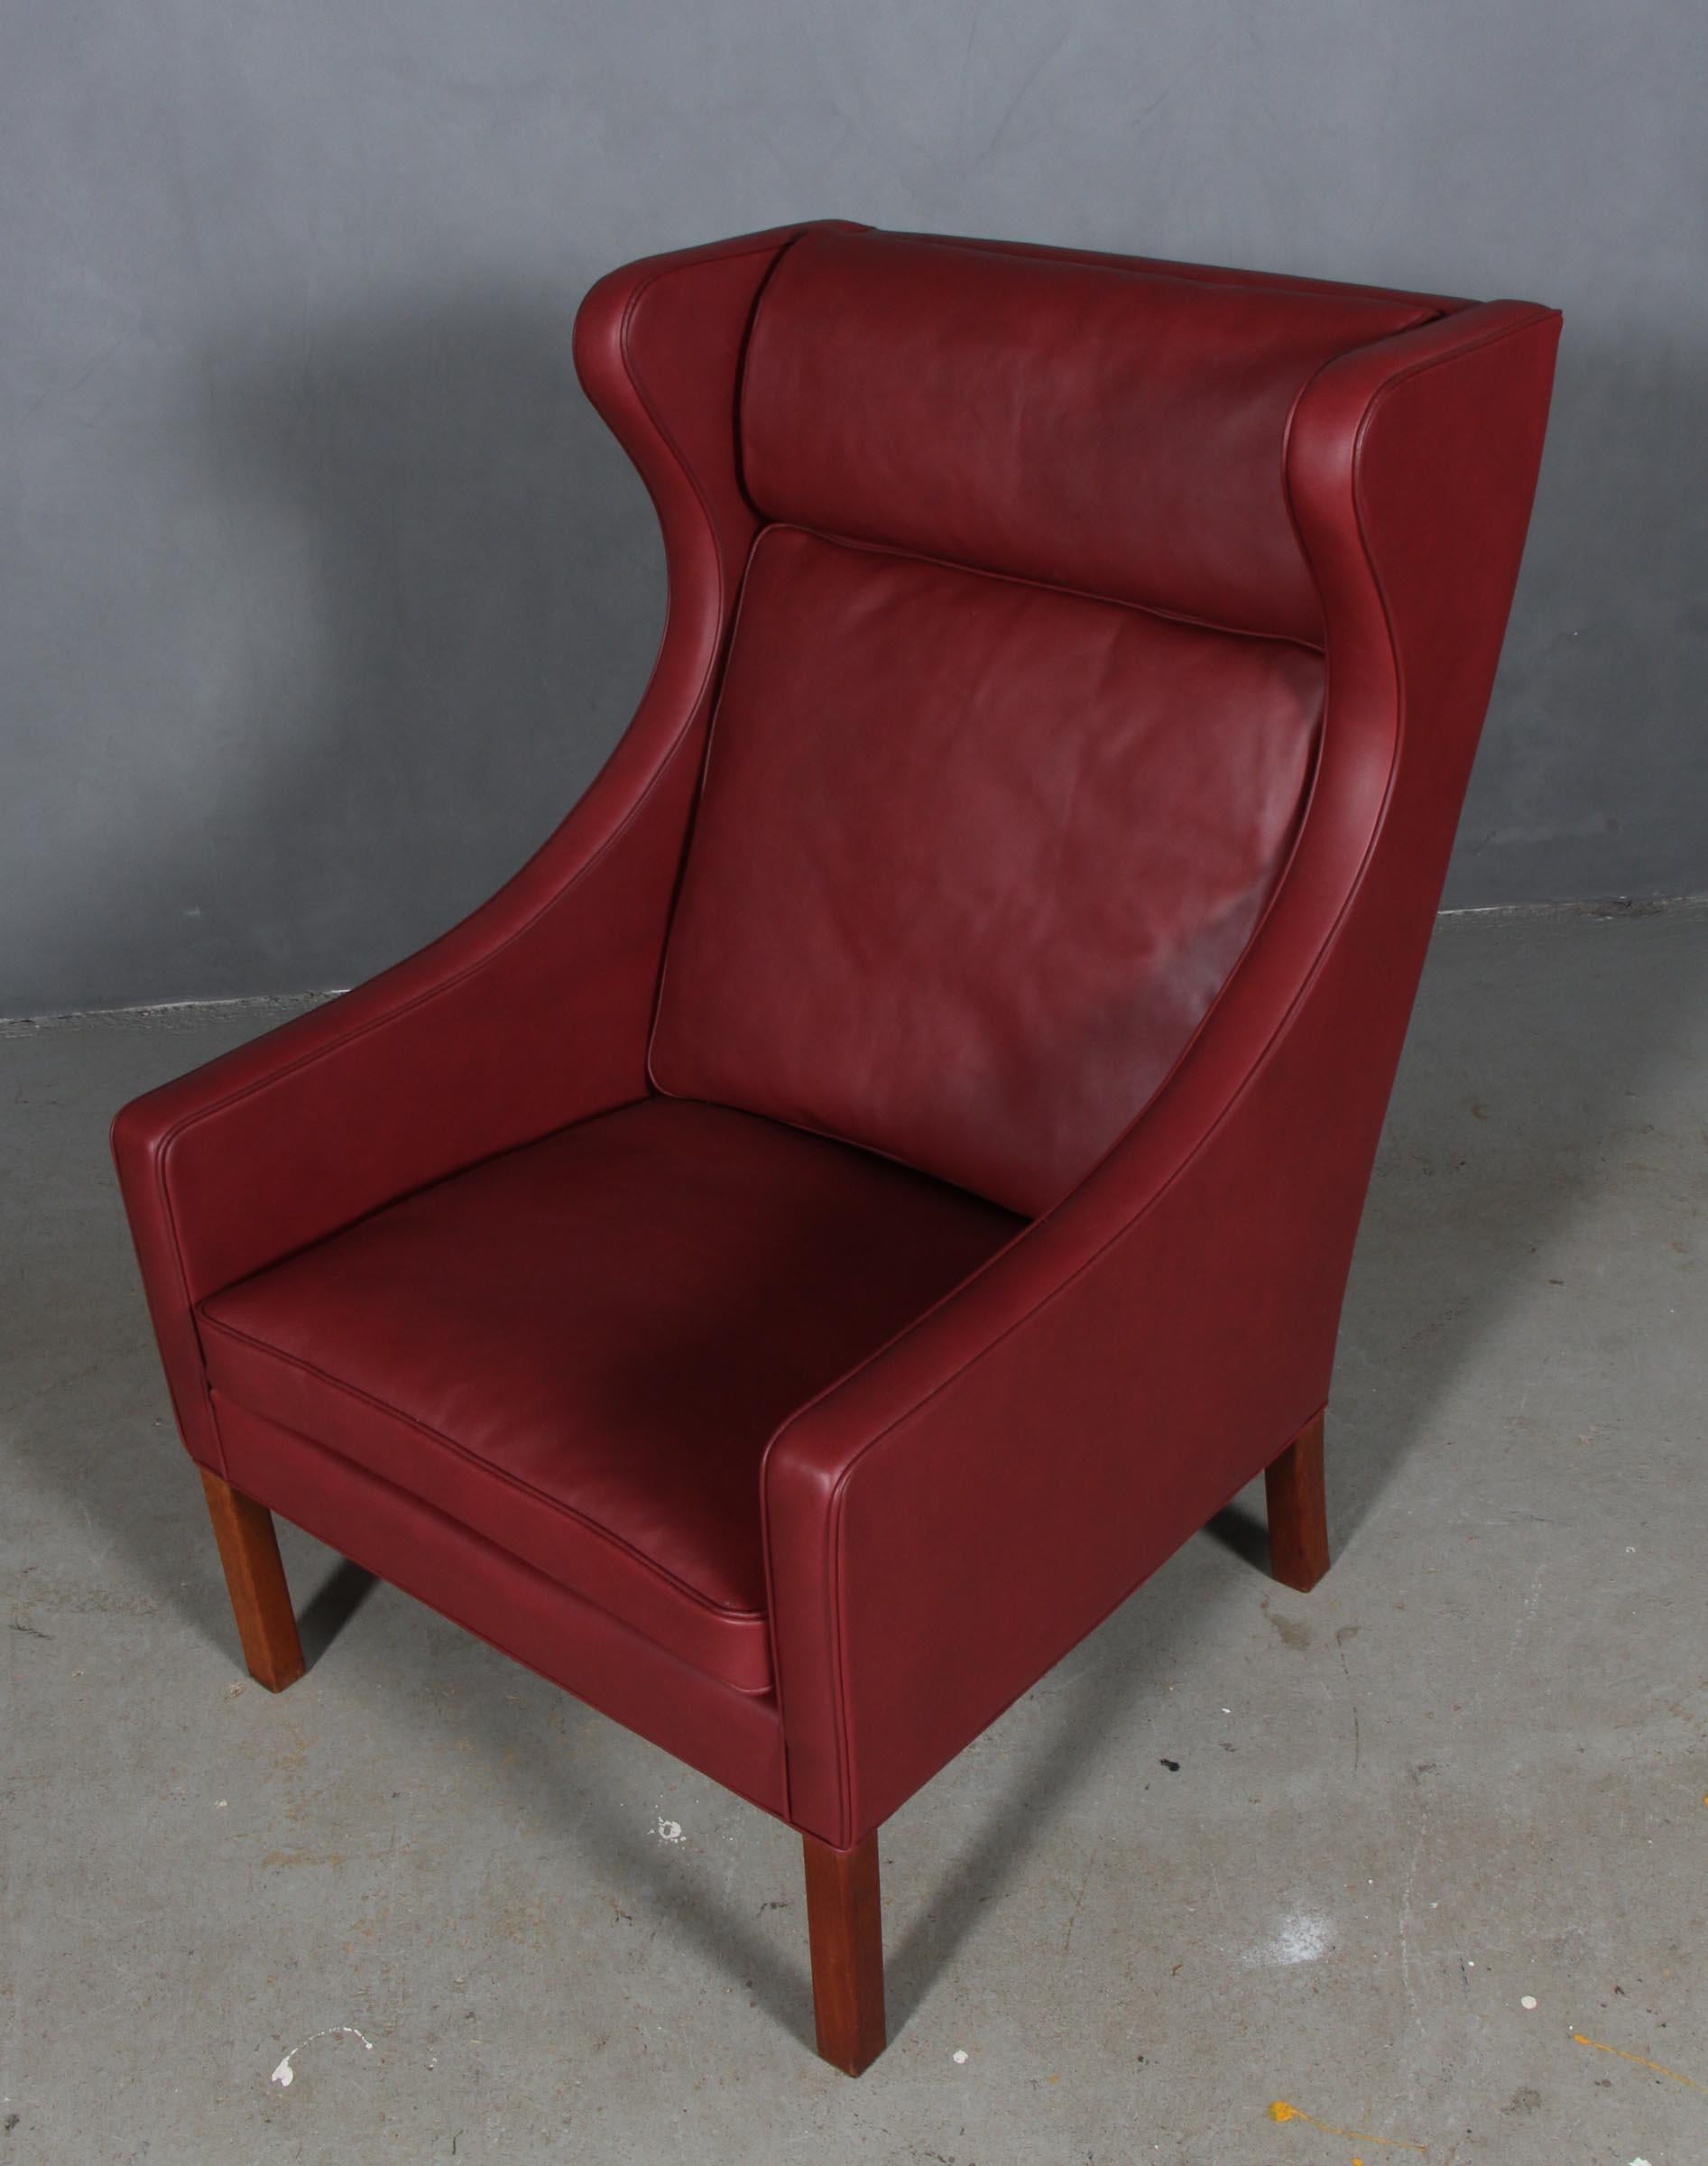 Børge Mogensen Ohrensessel neu gepolstert mit indisch rotem Leder Elegance.

Beine aus Teakholz.

Modell 2204, hergestellt von Fredericia Furniture.